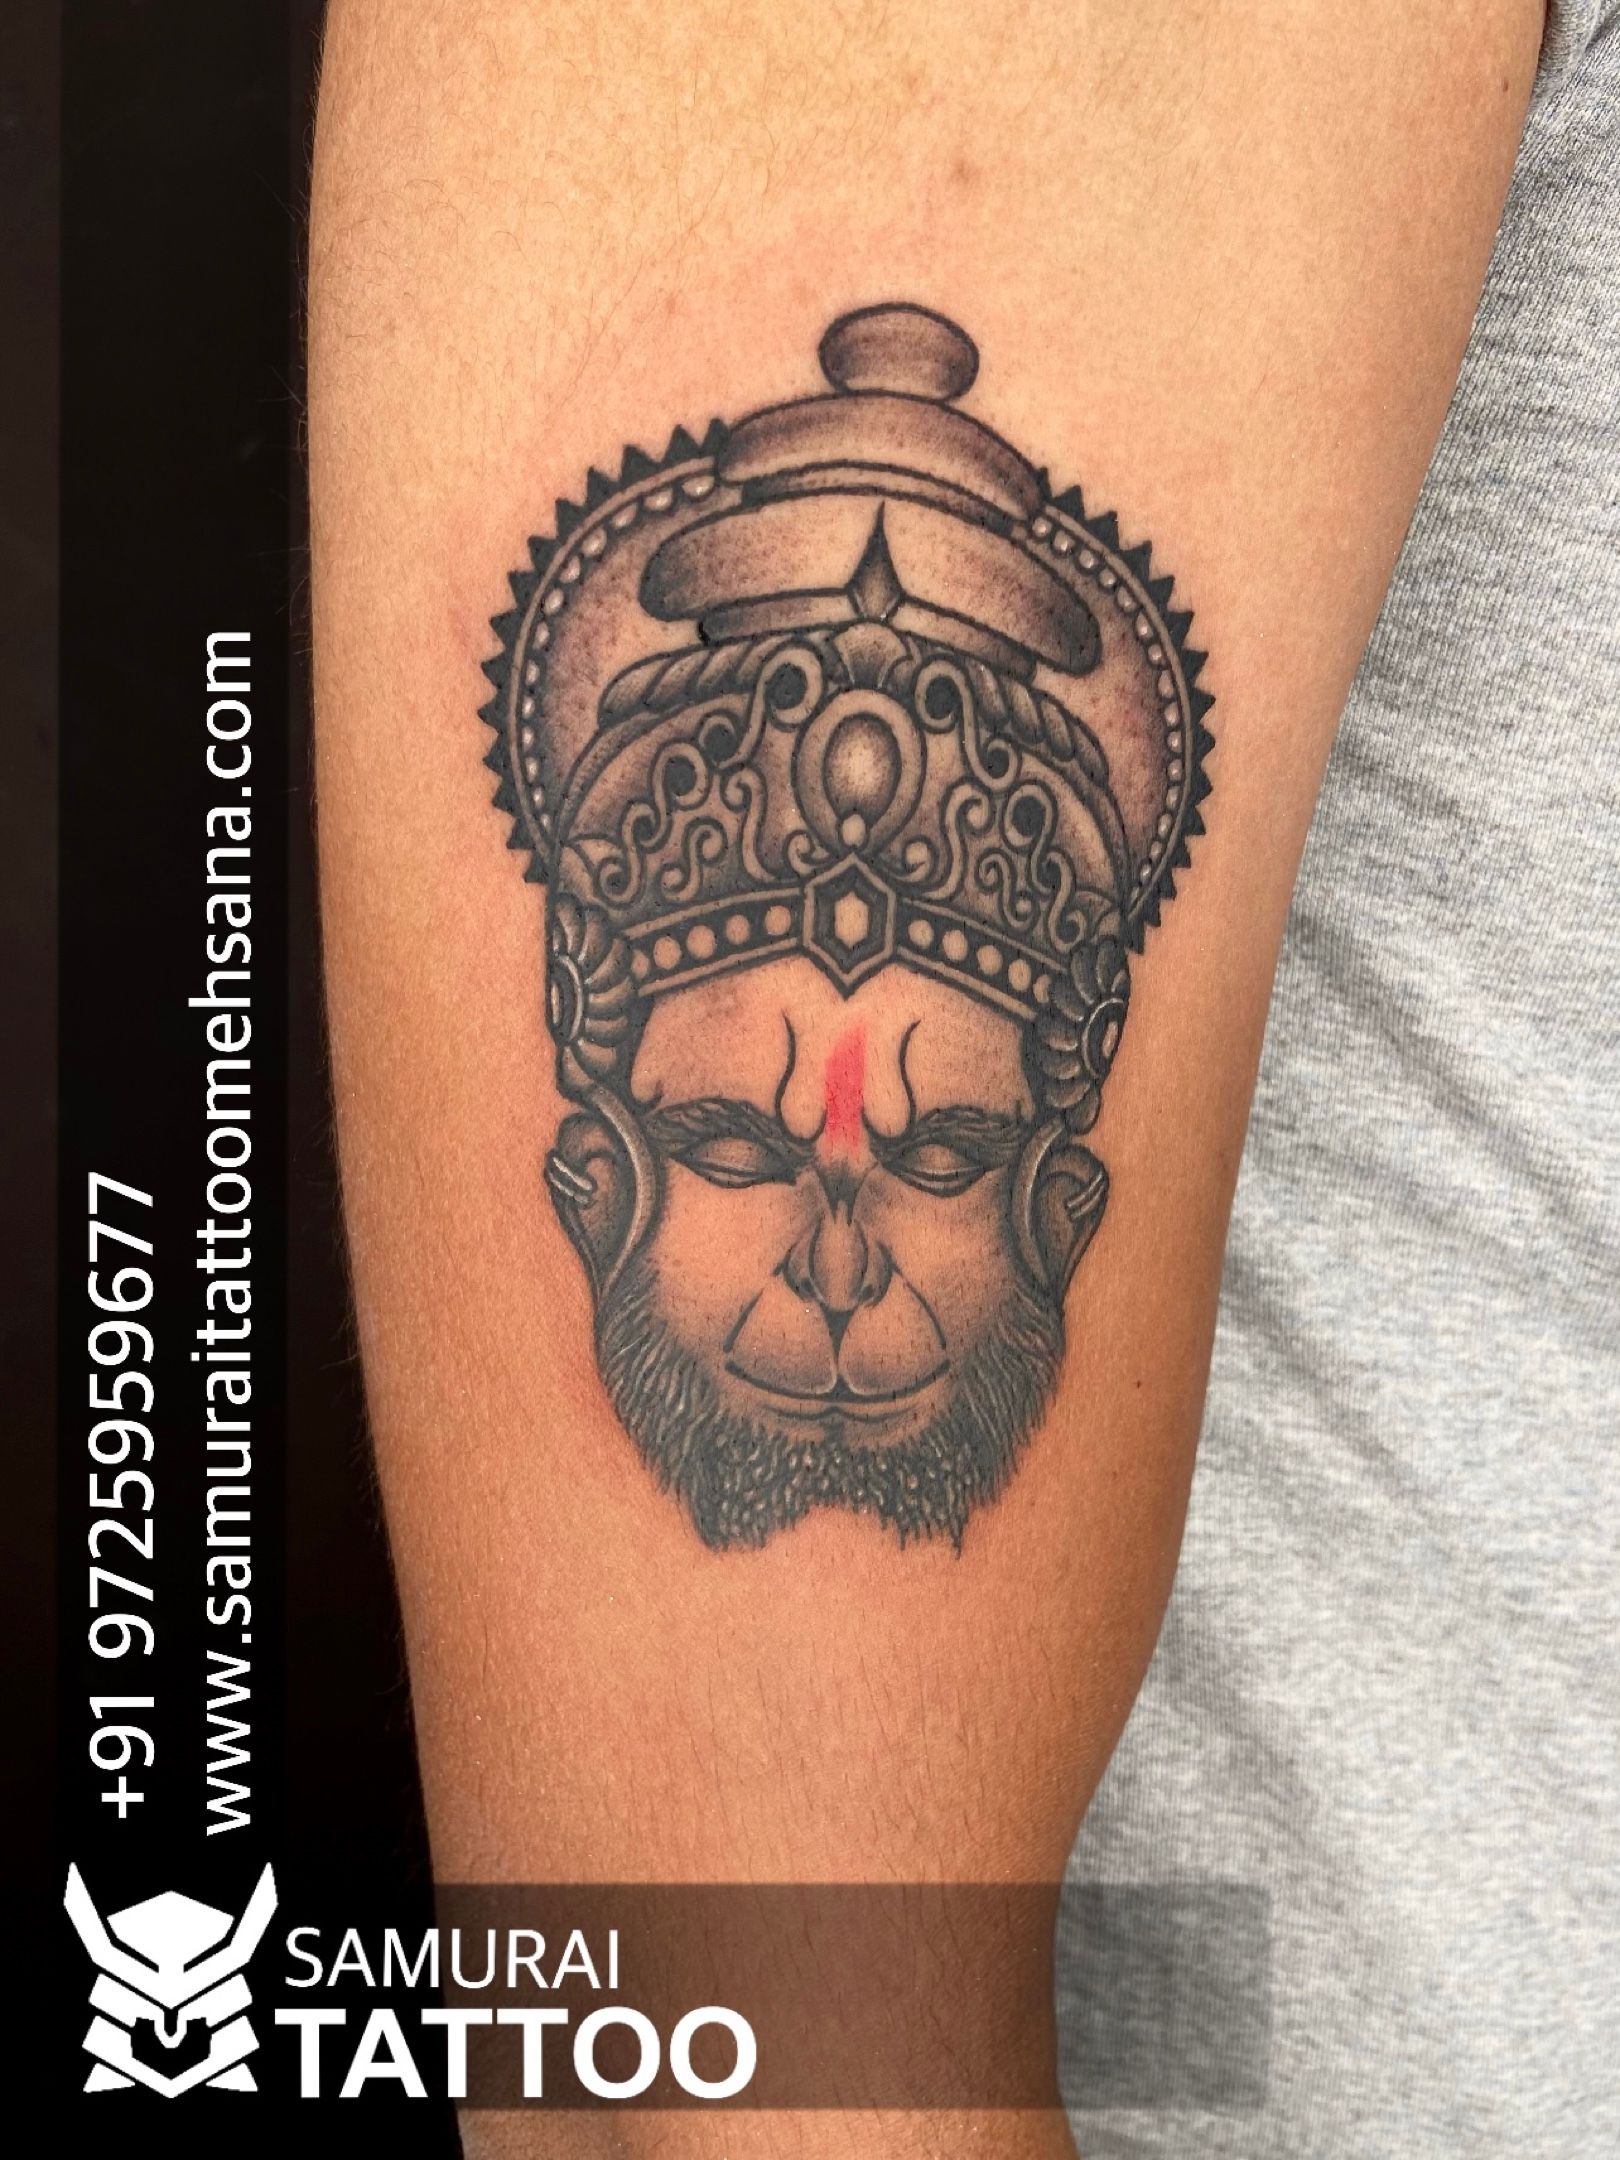 Hanuman tattoo design | Hanuman tattoo, Spiritual tattoos, Ink tattoo